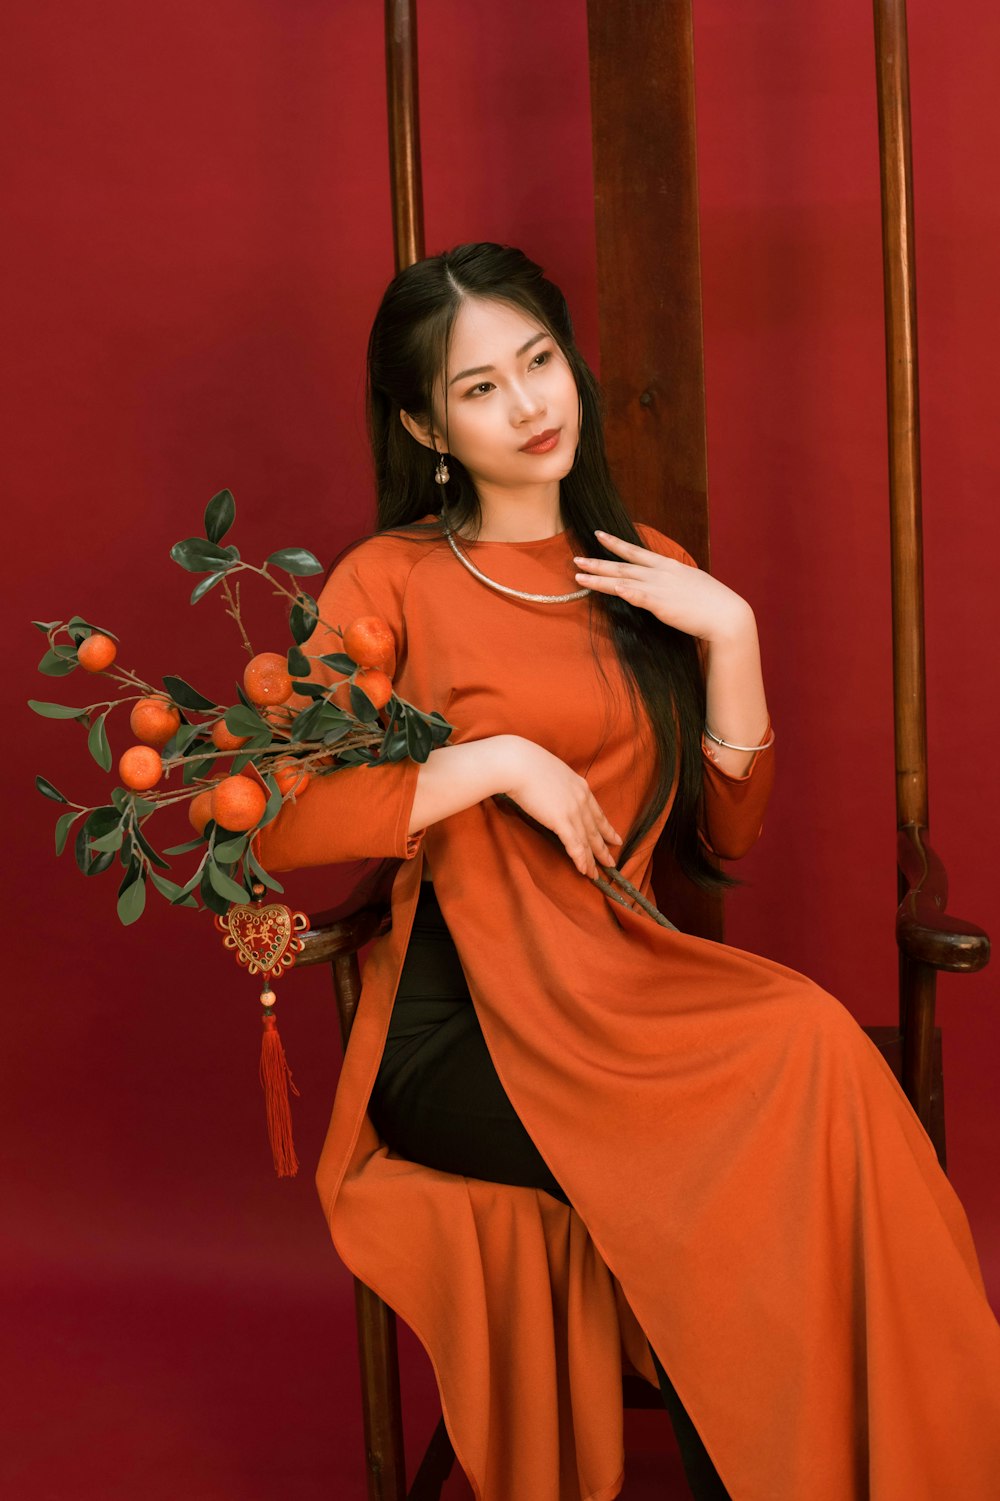 Une femme assise sur une chaise tenant un bouquet d’oranges